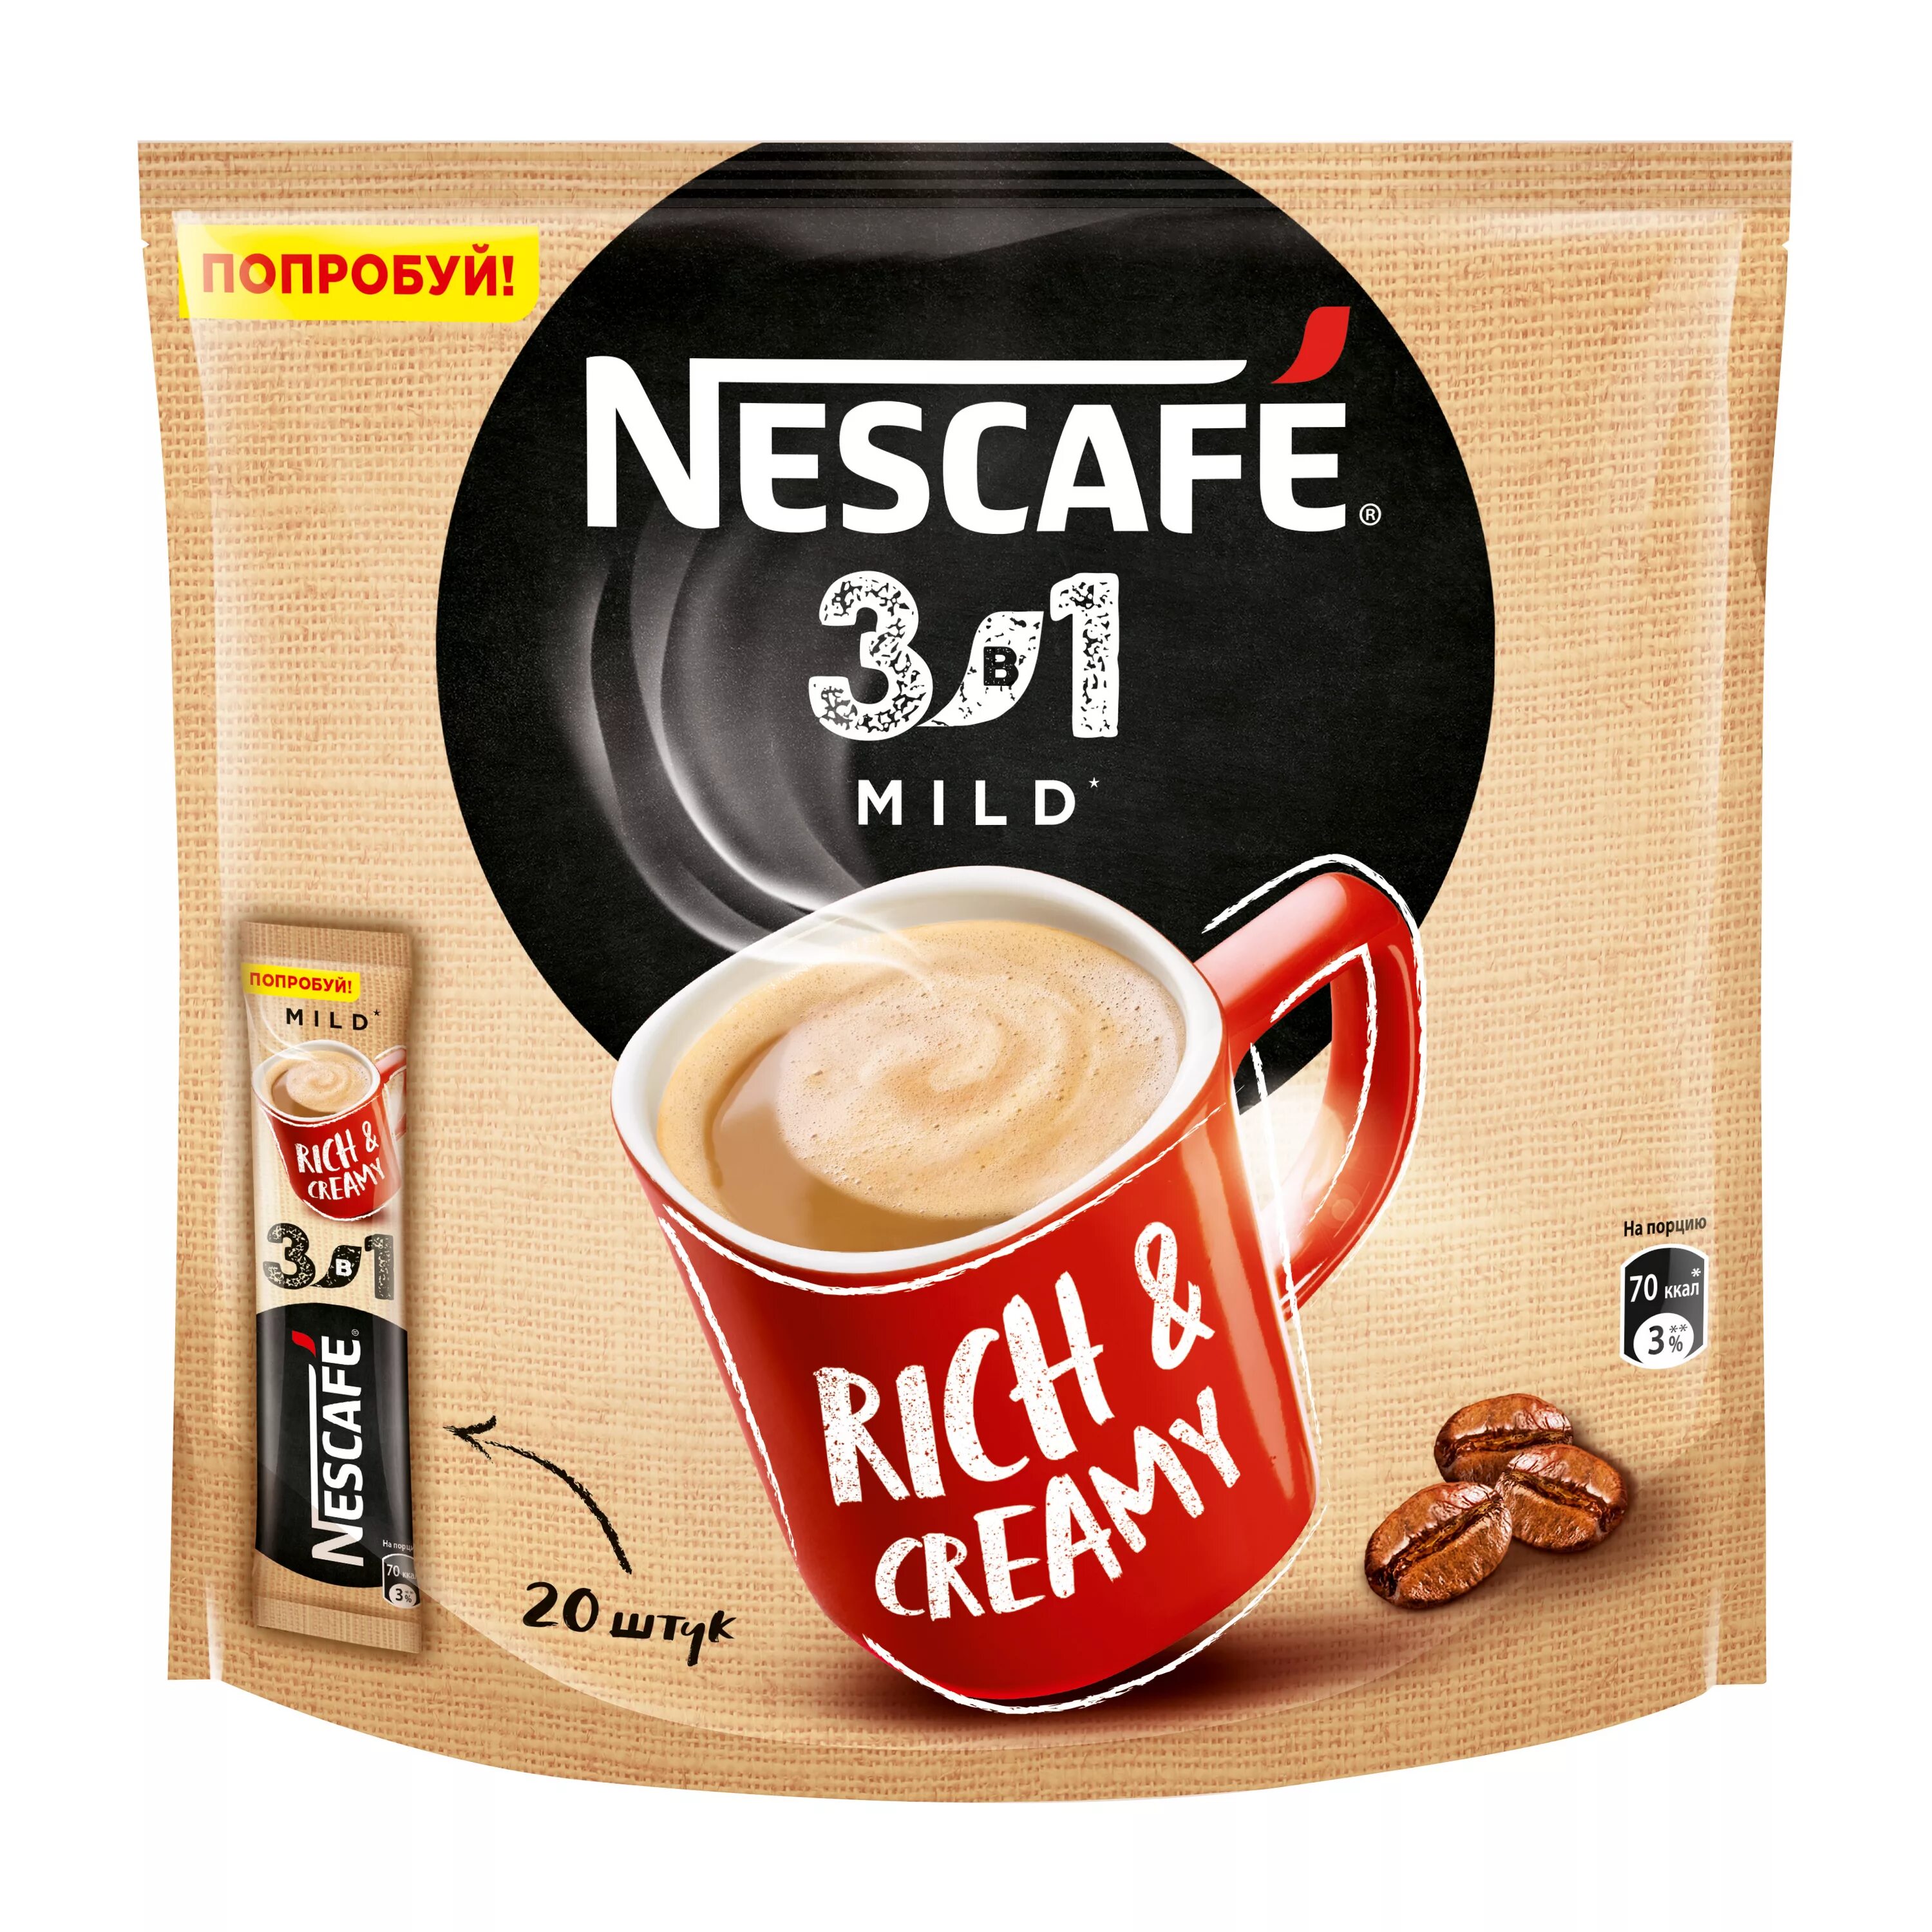 Nescafe 3 в 1 mild. Кофе Нескафе в пакетиках 3 в 1. Кофе 3 в 1 Нескафе латте. Растворимый кофе в пакетиках Нескафе 3 в 1.